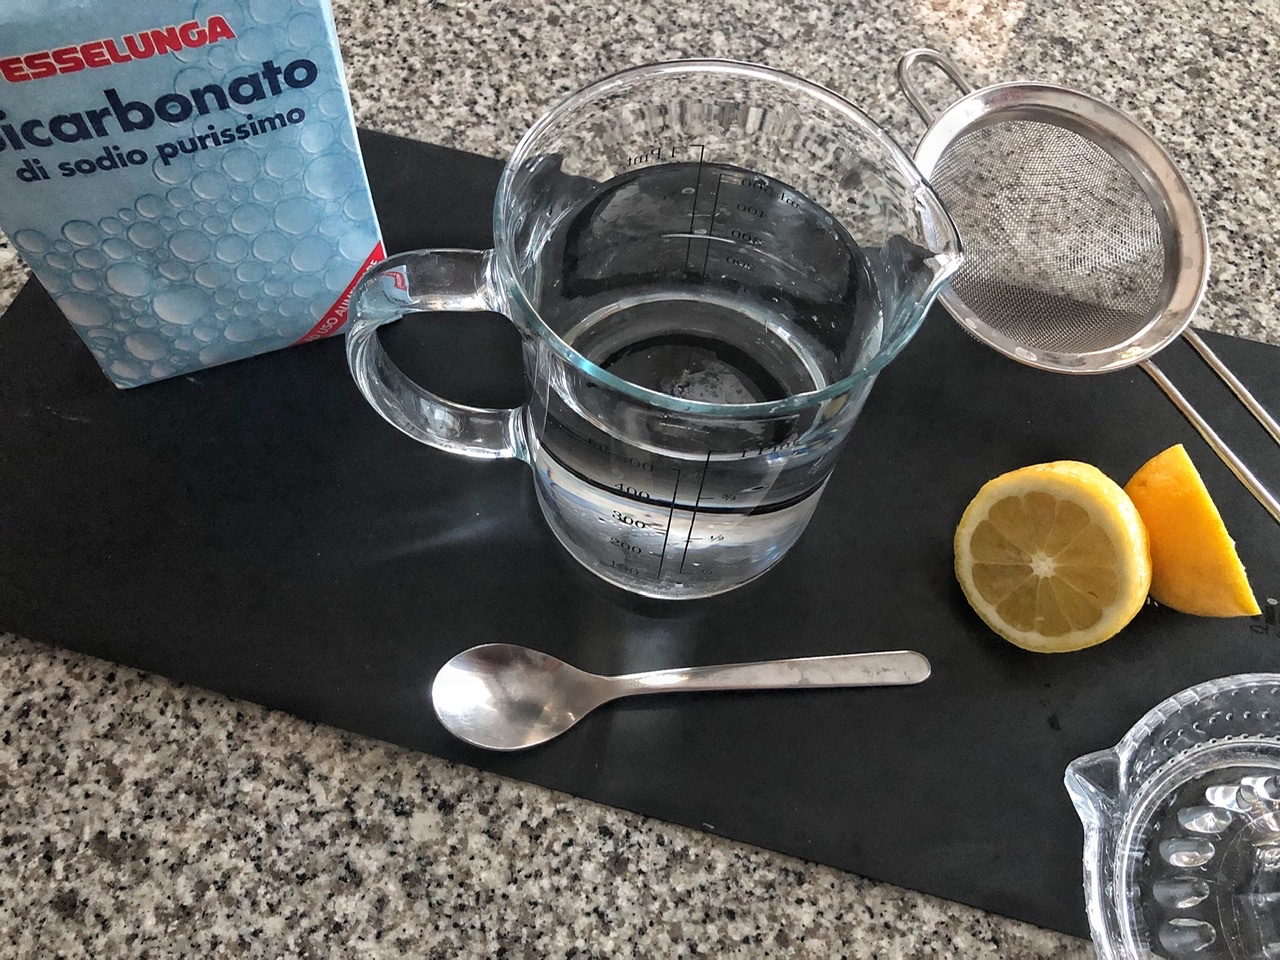 Acqua alcalinizzata con bicarbonato di sodio e limone? Ecco la mia esperienza!